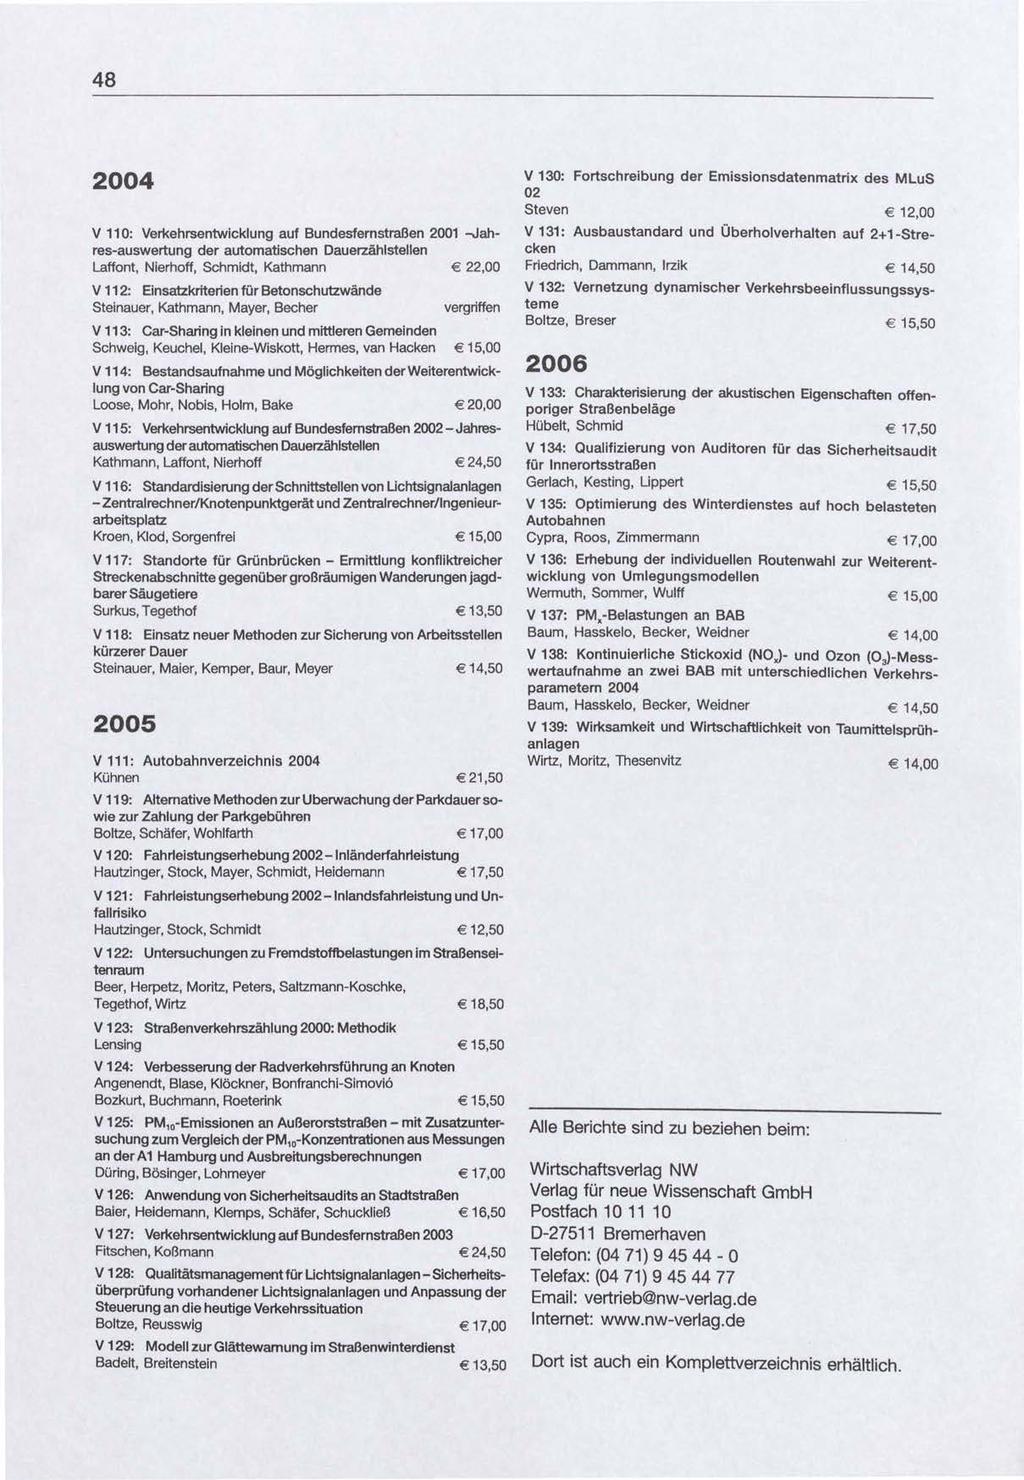 48 2004 V 11 0: Verkehrsentwicklung auf Bundesfernstraßen 2001 -Jahres-auswertung der automatischen Dauerzählstellen L.